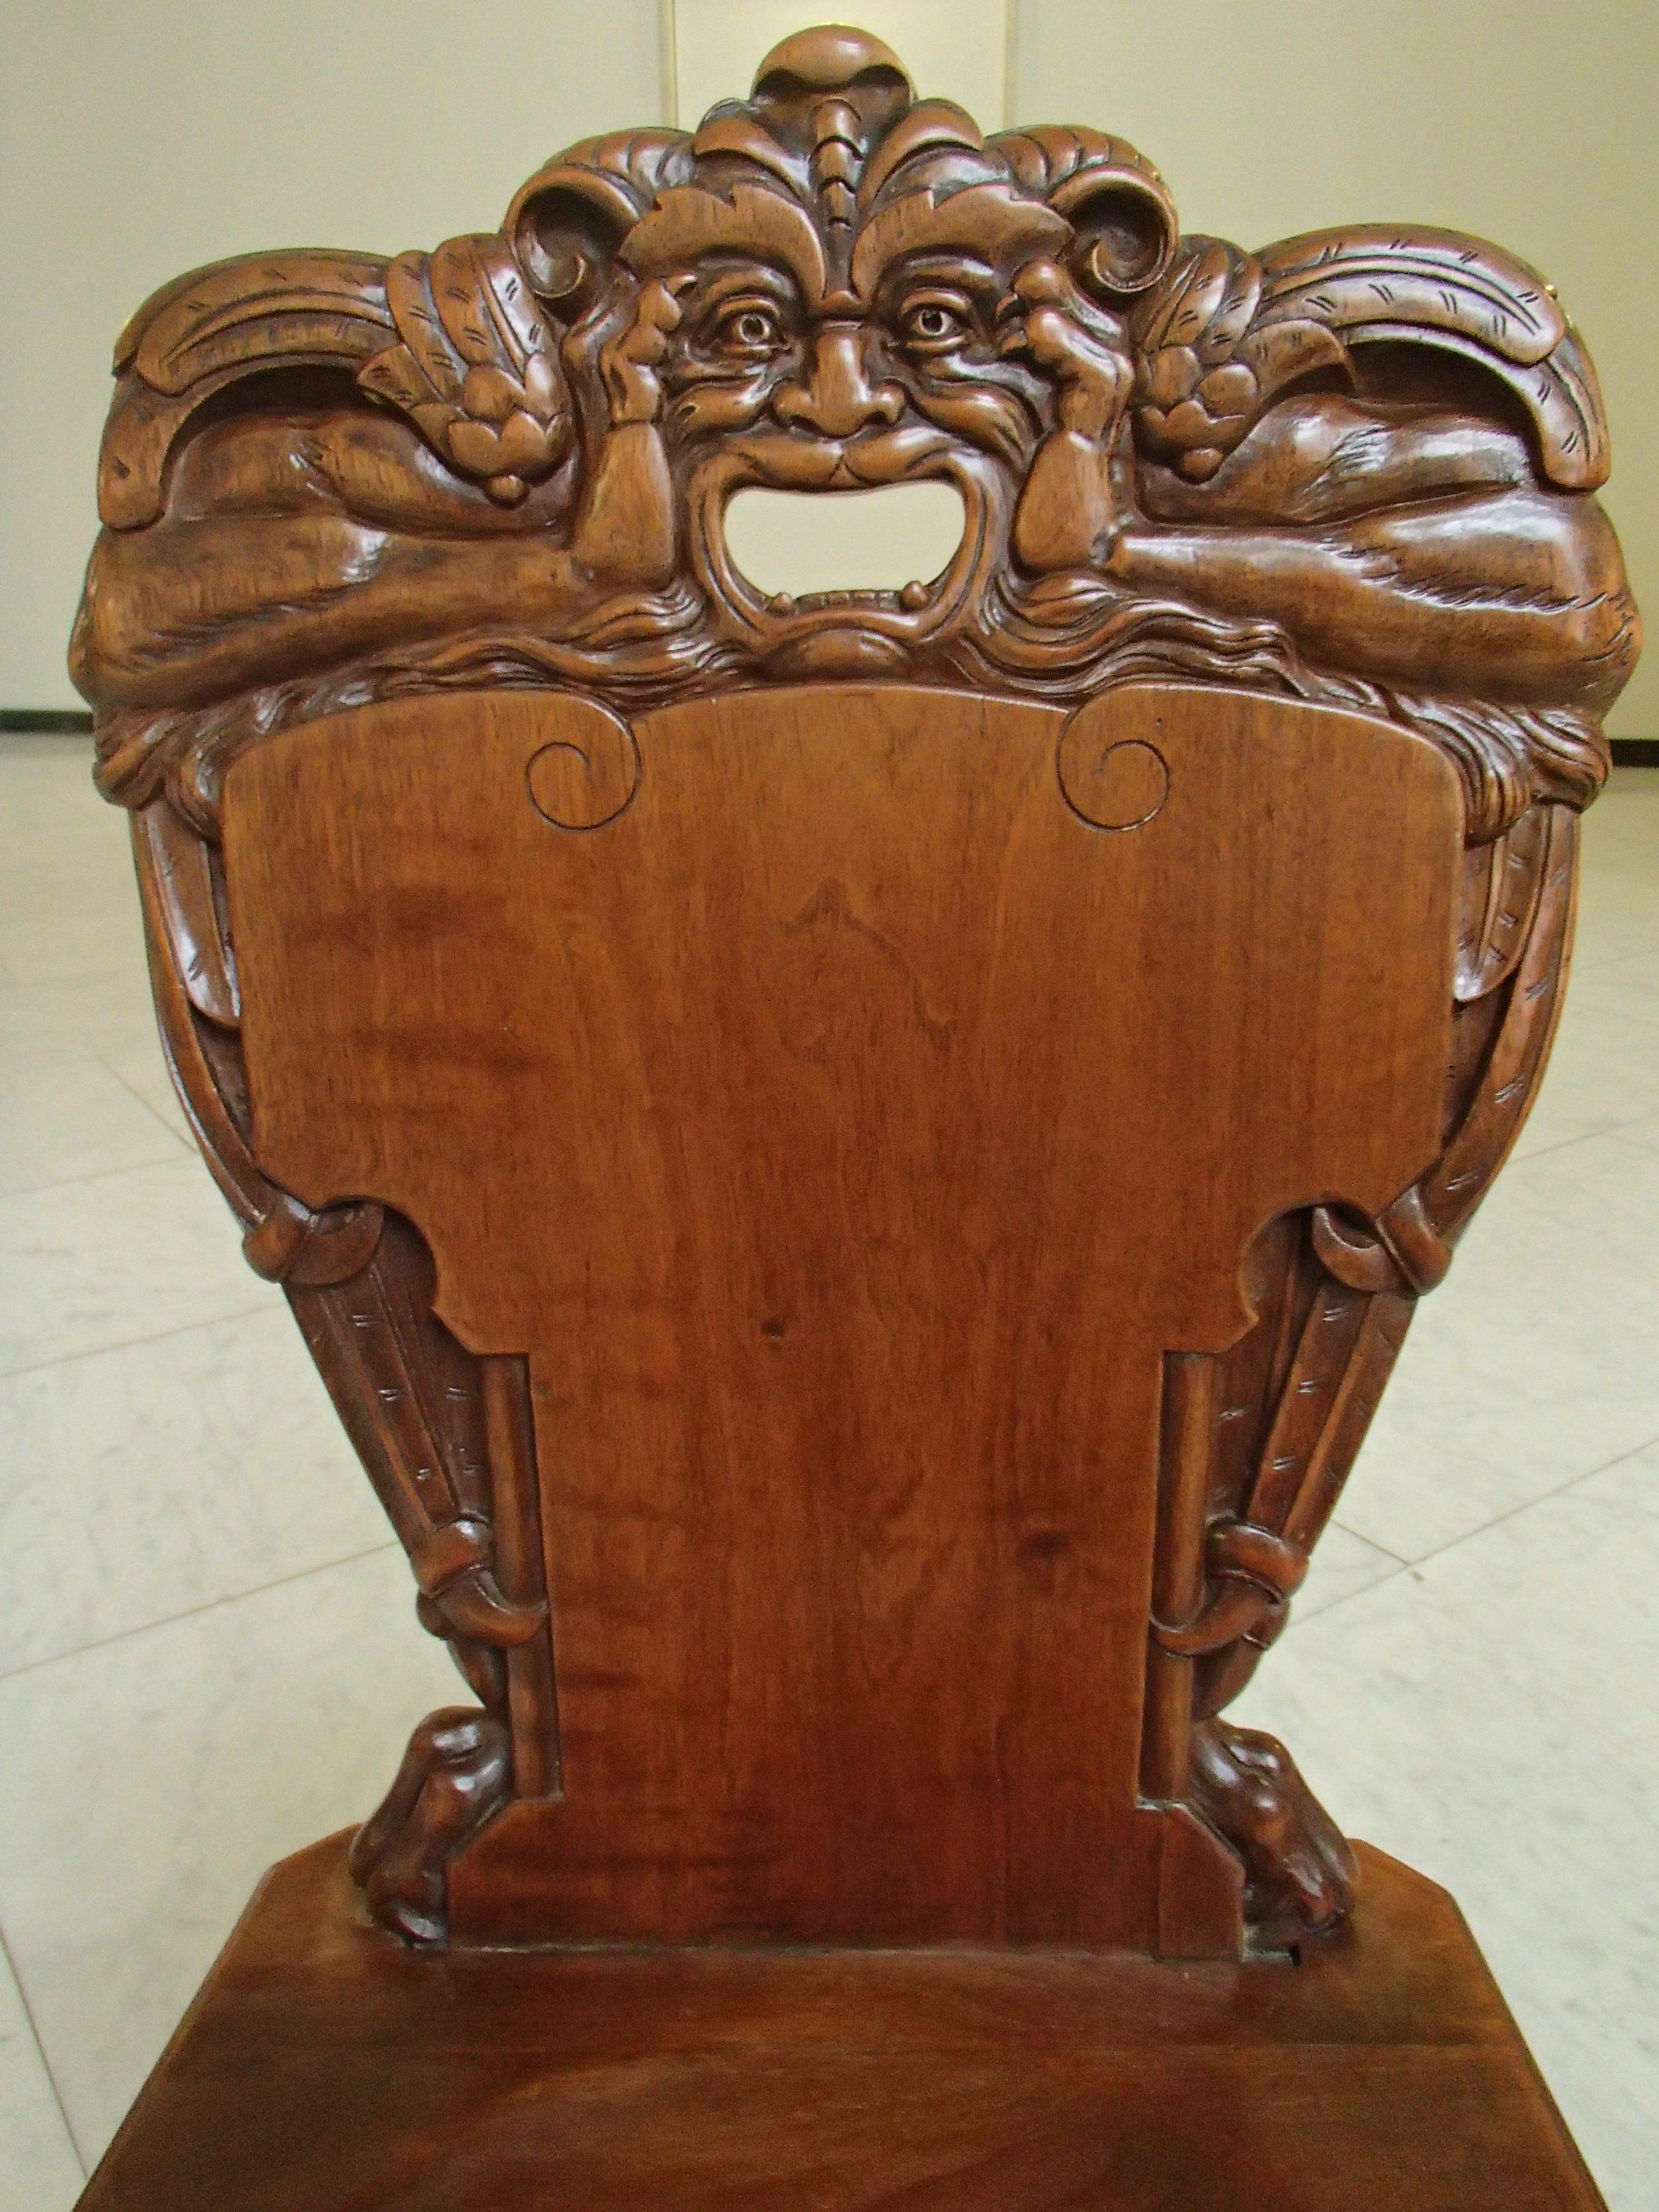 brutalistischer Holzstuhl aus dem 18. Jahrhundert mit geschnitztem Fabelwesen
insgesamt 5 verfügbar siehe andere Ankündigungen.